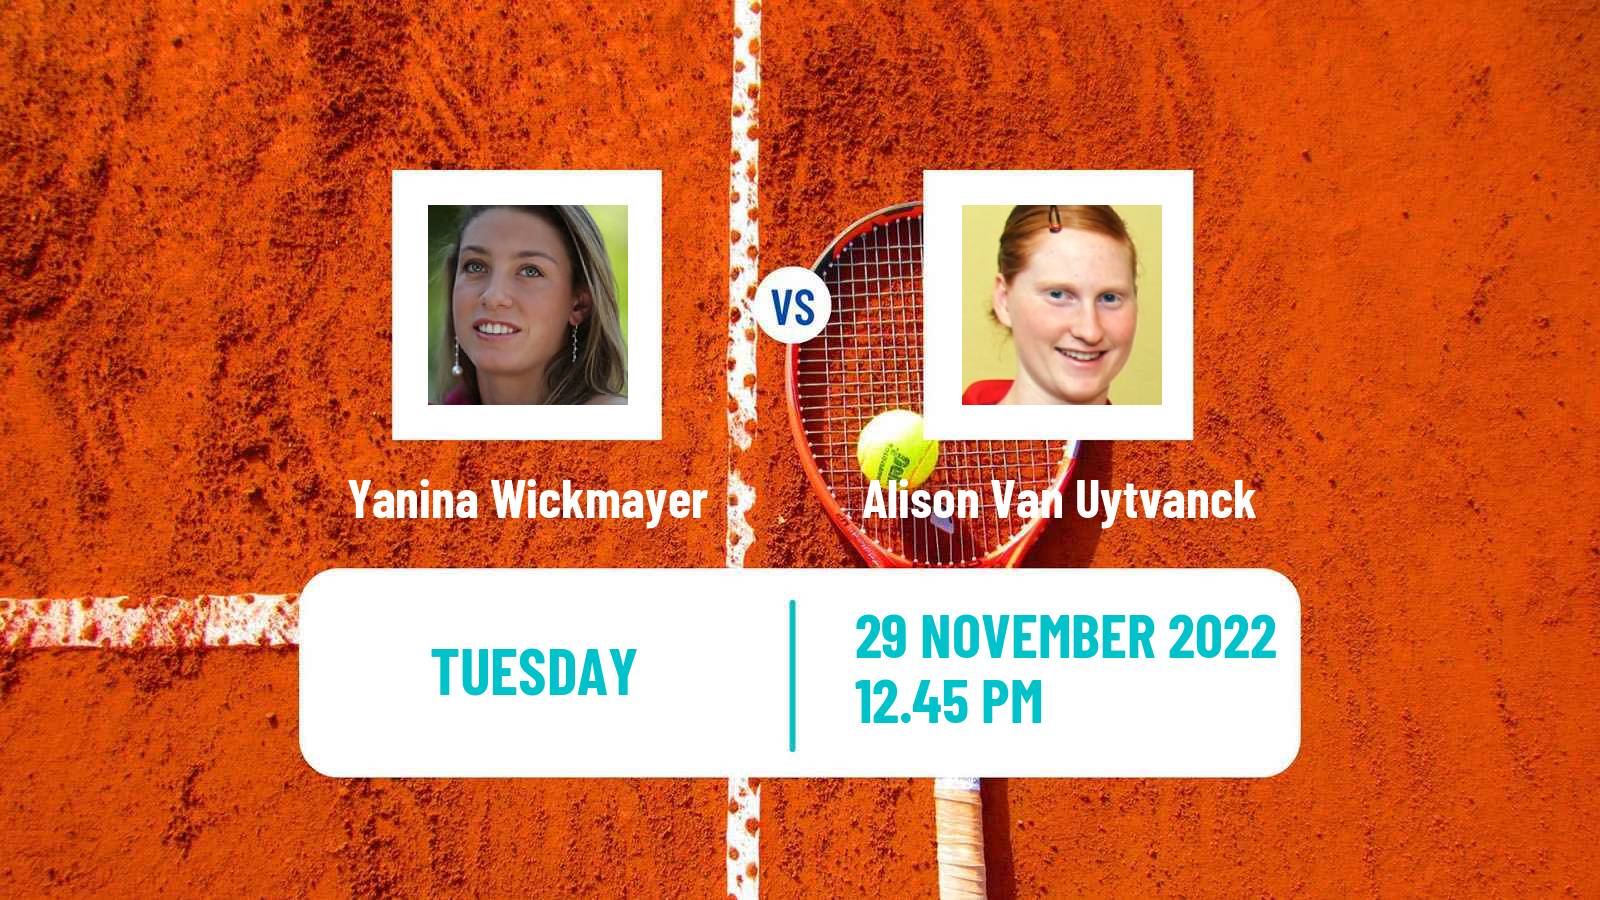 Tennis ATP Challenger Yanina Wickmayer - Alison Van Uytvanck